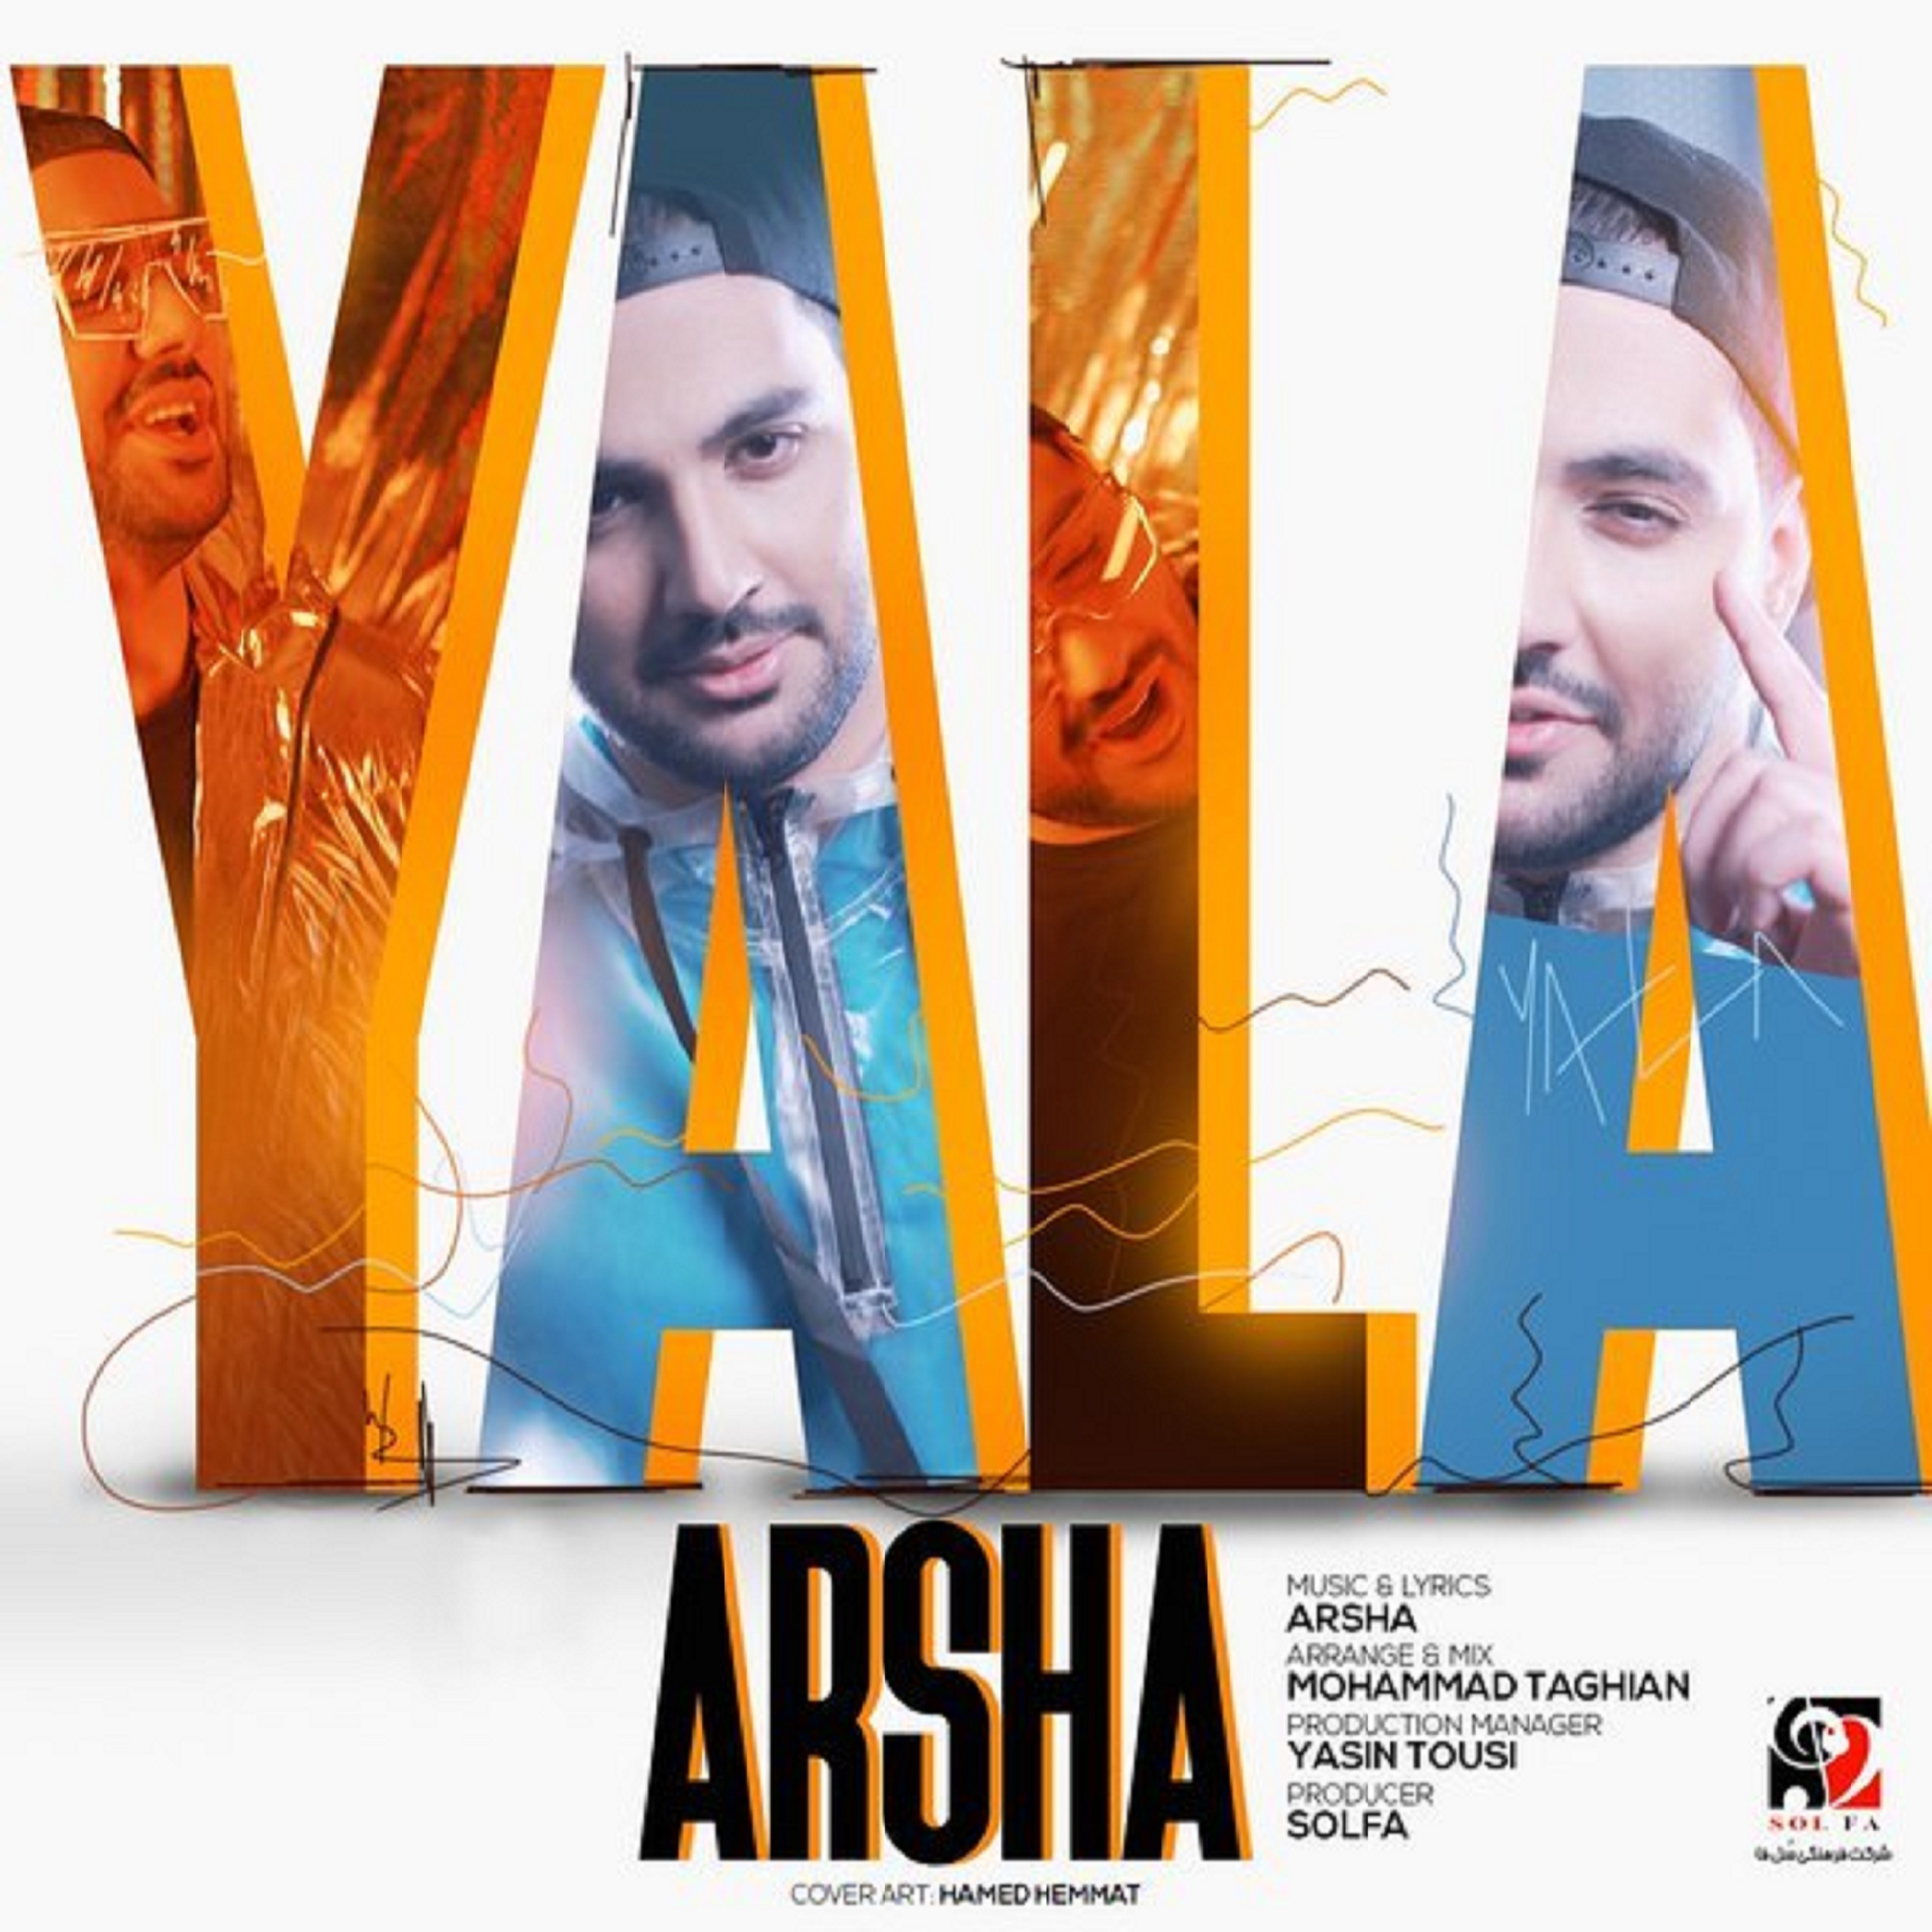  دانلود آهنگ جدید آرشا - یالا | Download New Music By Arsha - Yala